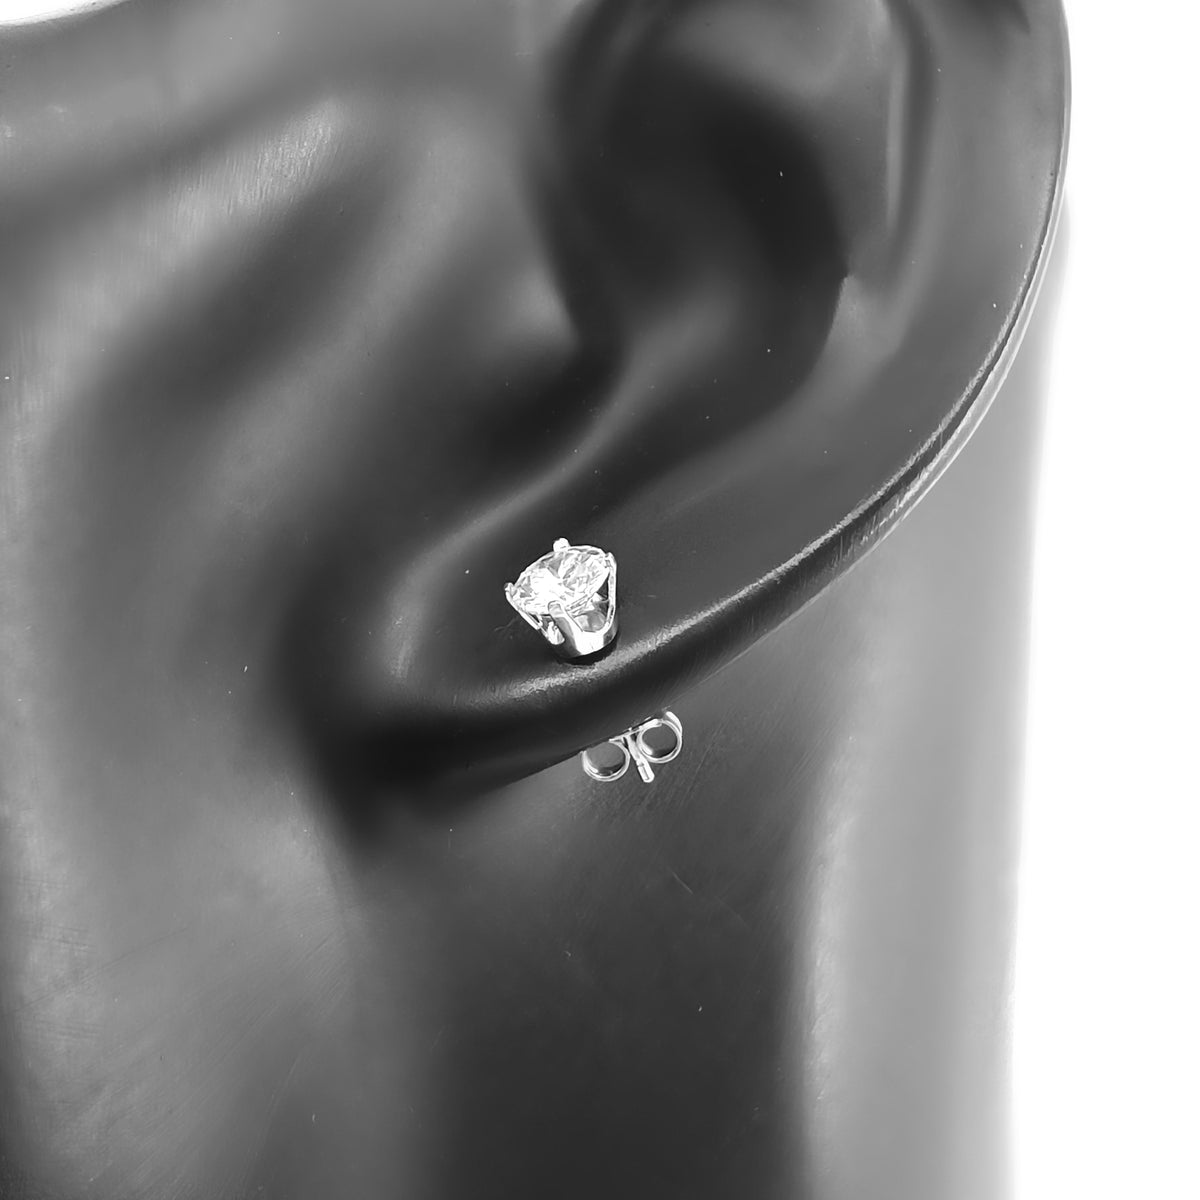 Classic Design Stud Earrings 34mm Pear Cut Vvs Moissanite Diamond 10K Gold  Earrings for Girl S Gift  China Earring Moissanite and Moissanite Stud  Earrings 925 Sterling Silver price  MadeinChinacom